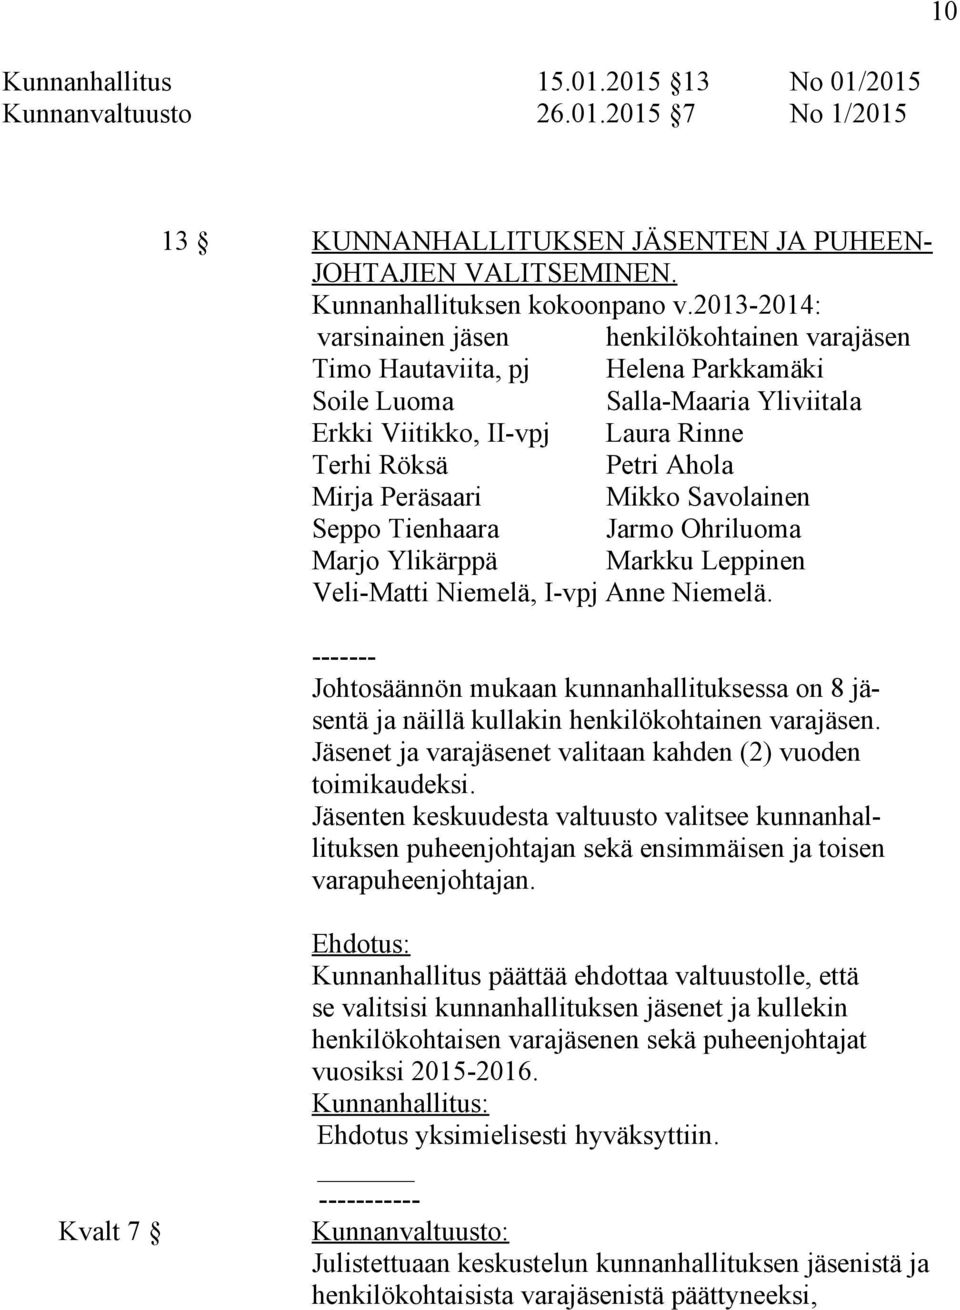 Peräsaari Mikko Savolainen Seppo Tienhaara Jarmo Ohriluoma Marjo Ylikärppä Markku Leppinen Veli-Matti Niemelä, I-vpj Anne Niemelä.